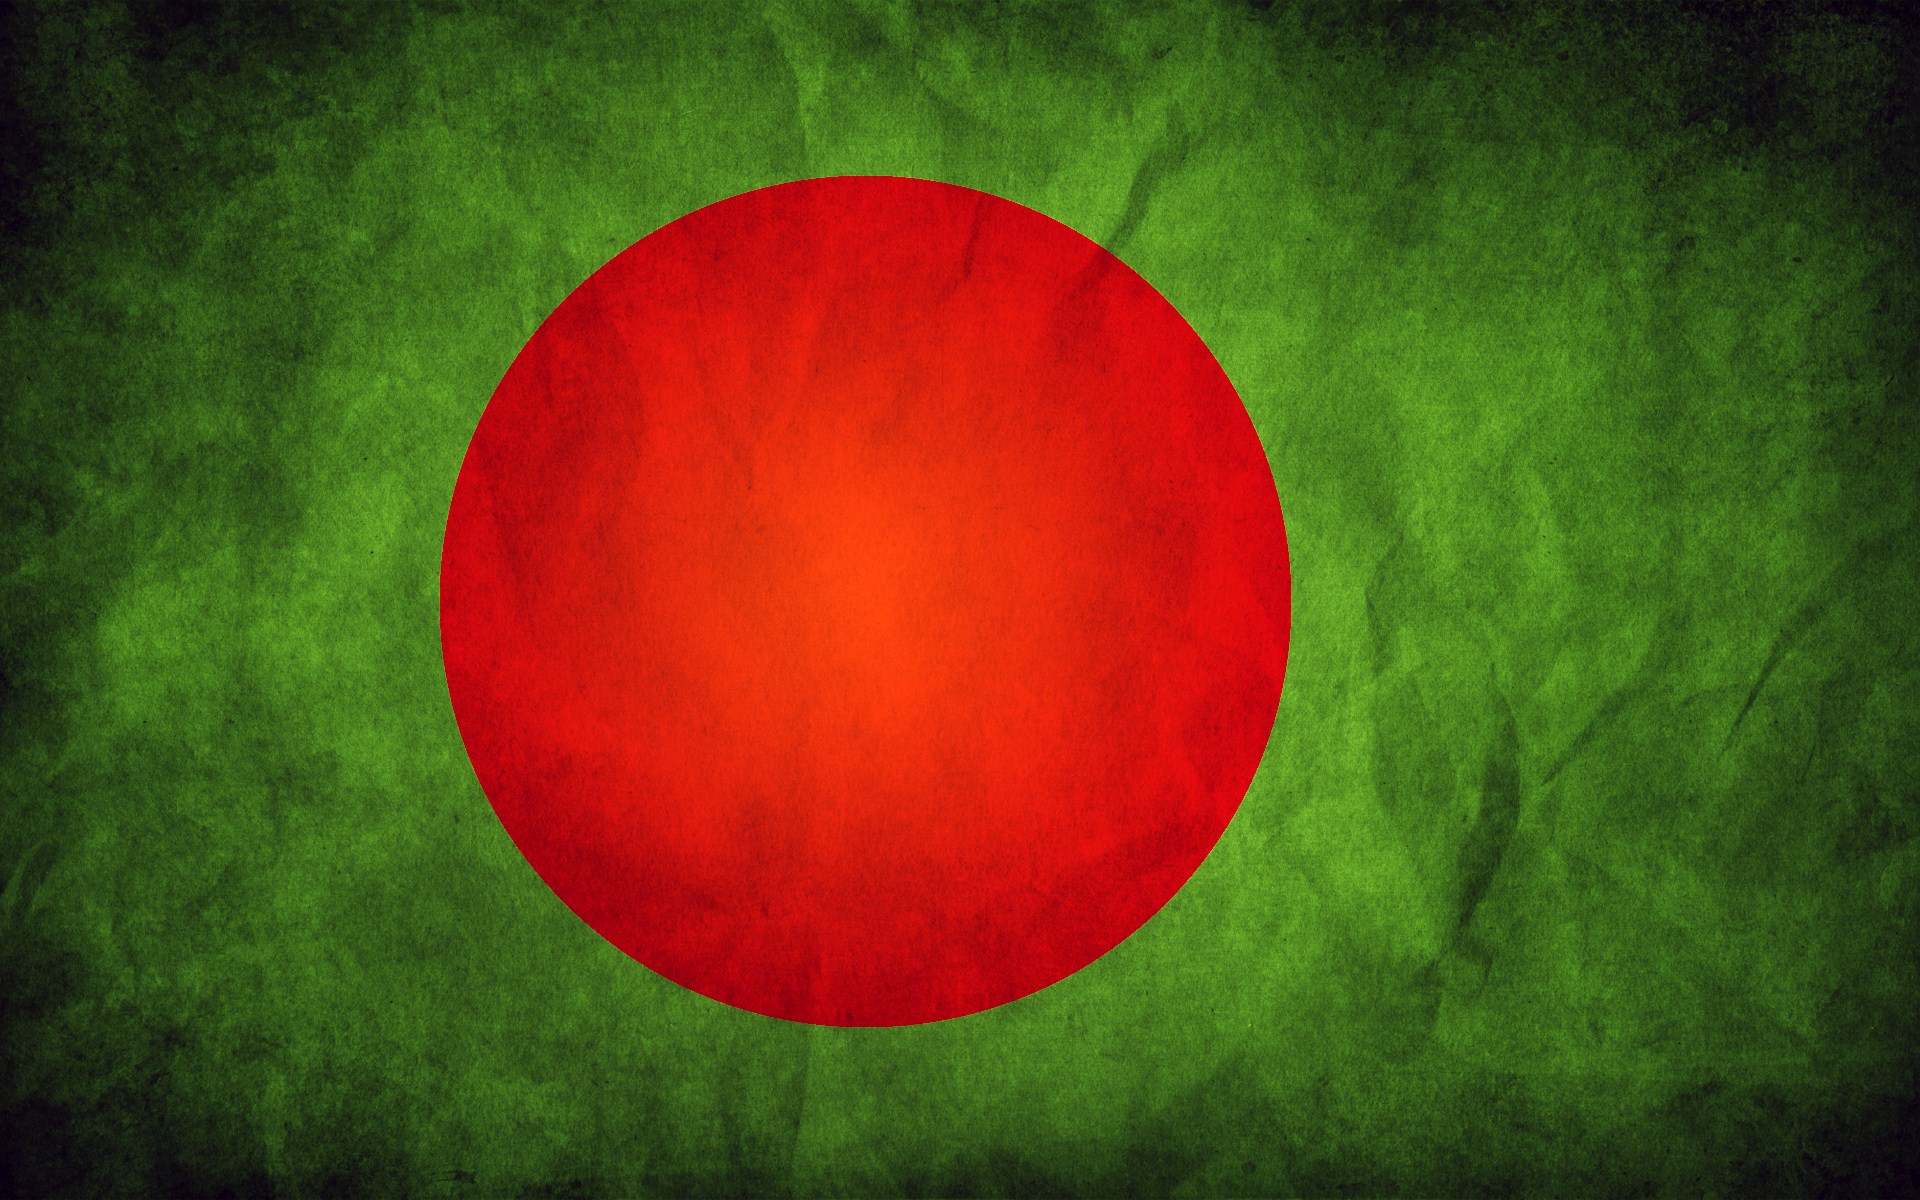 bangladesh flag wallpaper hd,red,green,circle,sky,flag